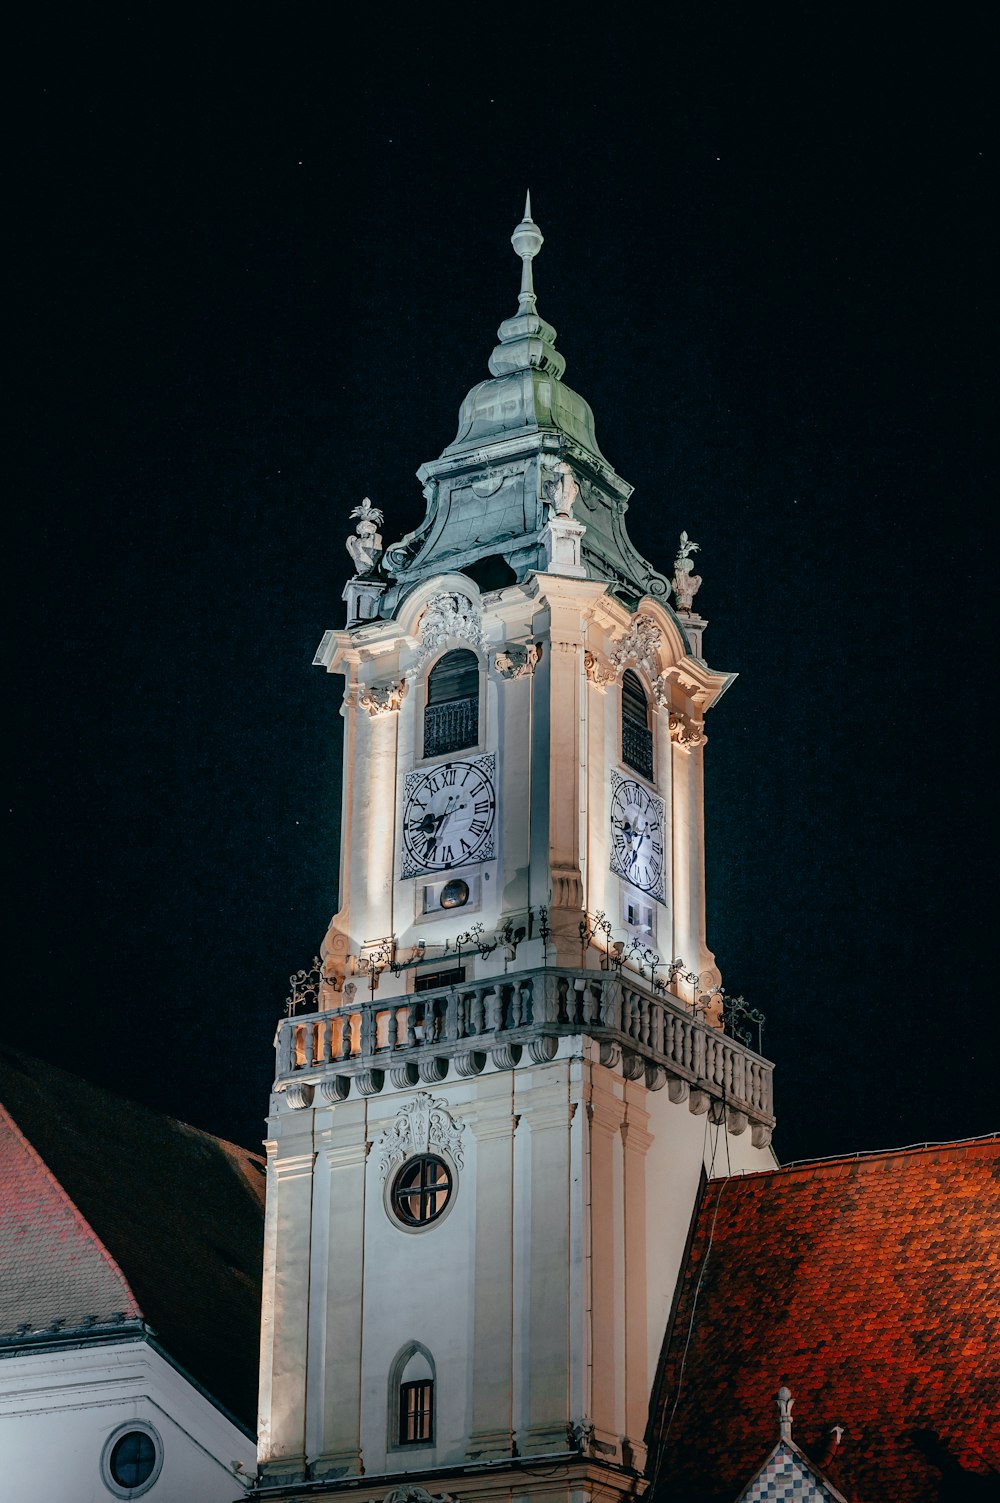 un'alta torre dell'orologio con un orologio su ciascuno dei suoi lati